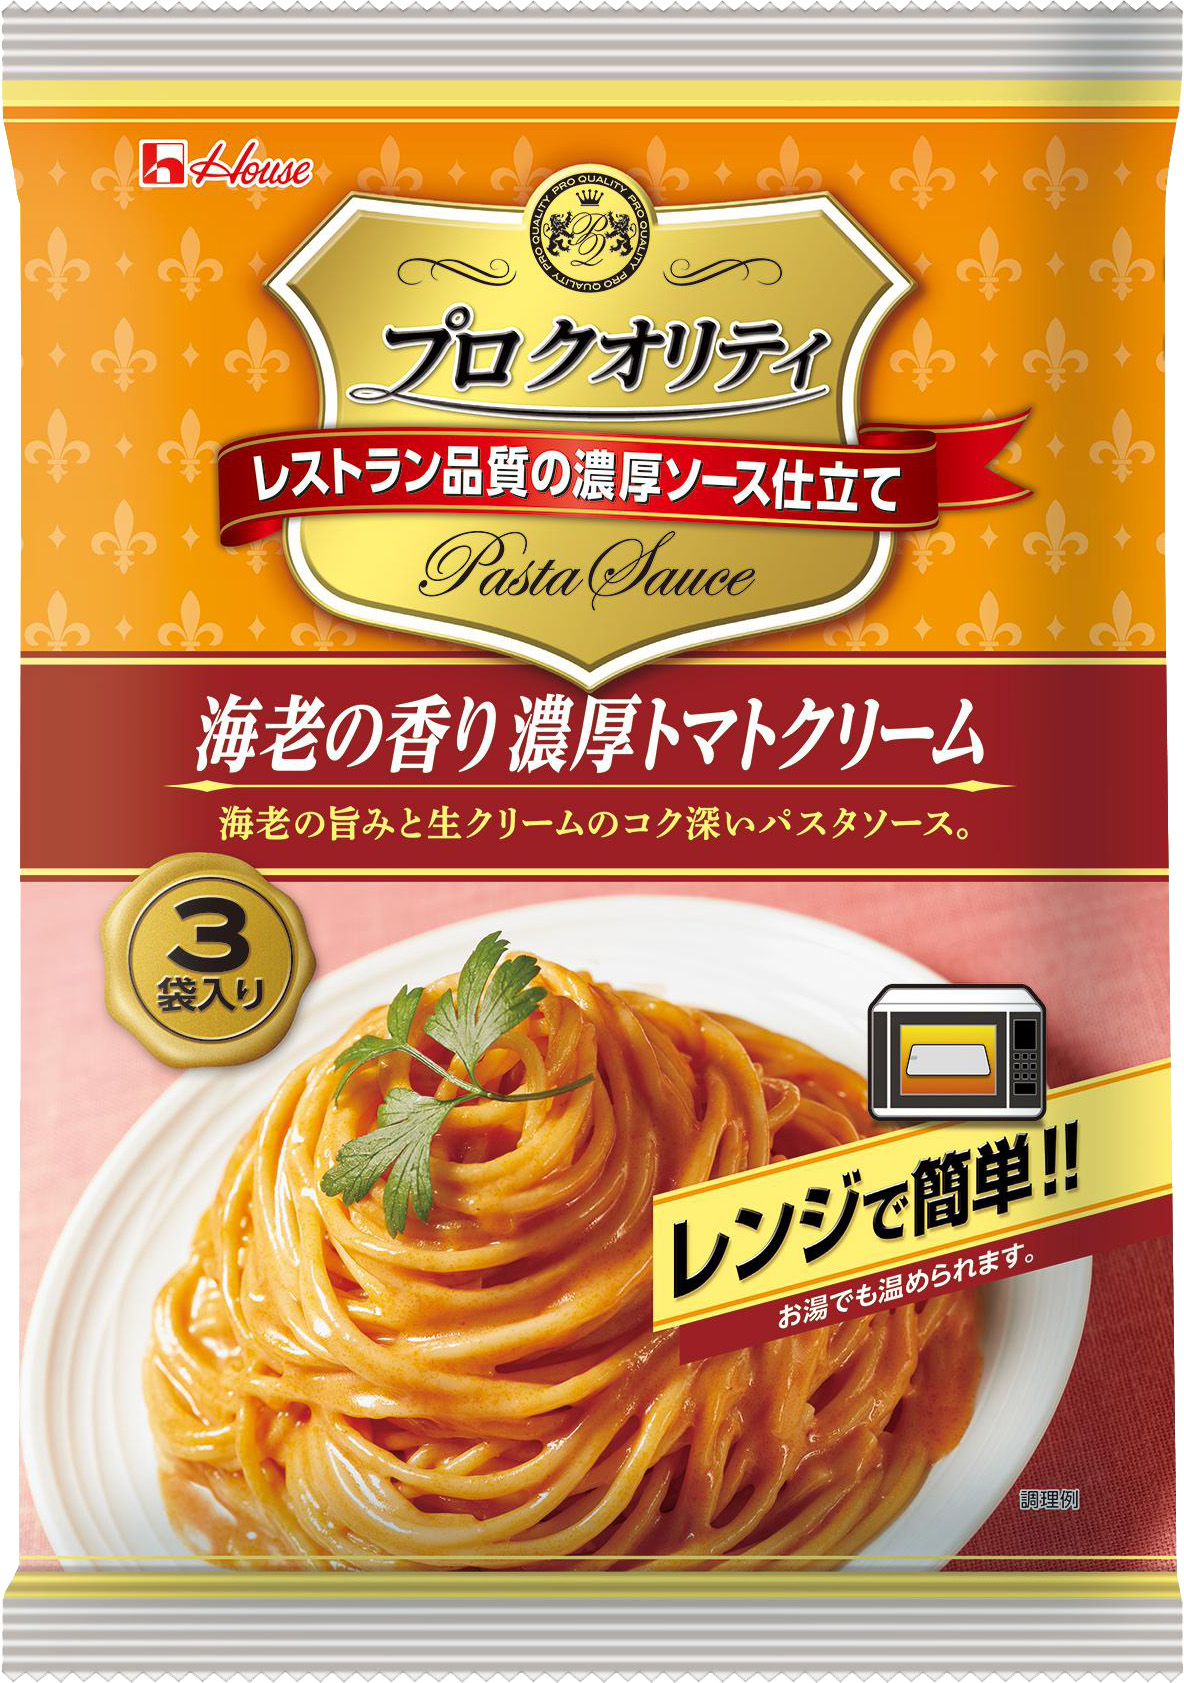 プロ クオリティ パスタソース3袋入り 海老の香り濃厚トマトクリーム | 商品カタログトップ | ハウス食品